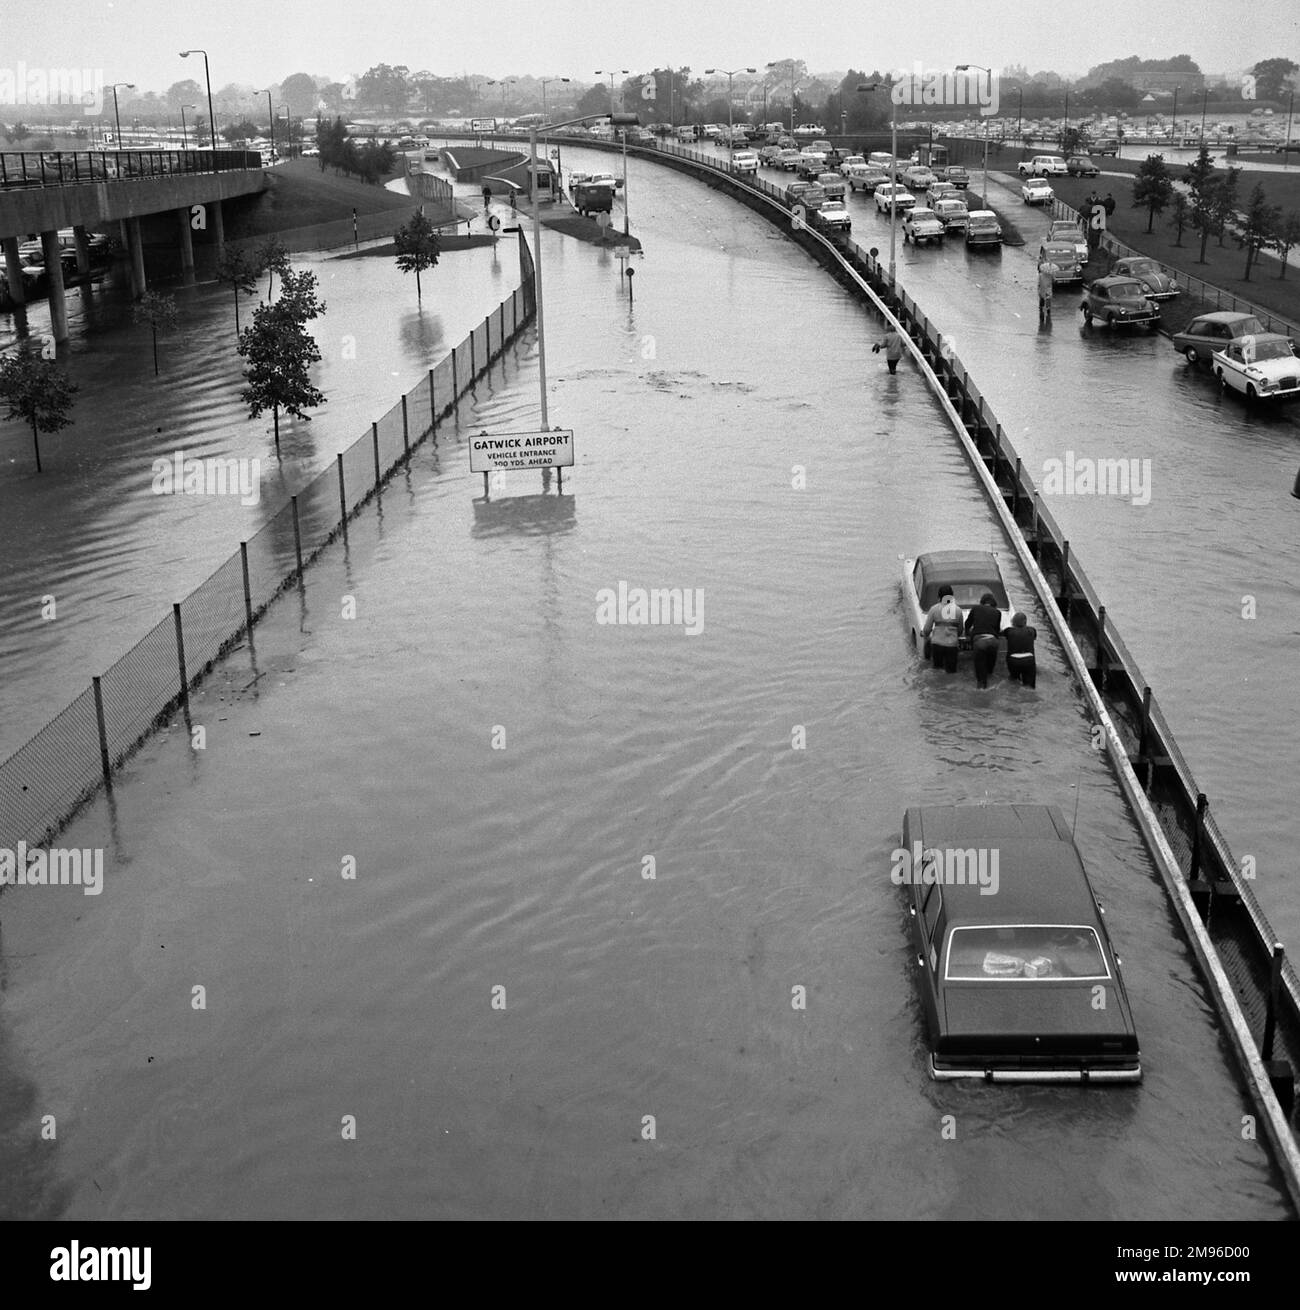 Ein Schauplatz von Überschwemmungen am Flughafen Gatwick, West Sussex, mit Autos, die teilweise im Wasser waren. Stockfoto